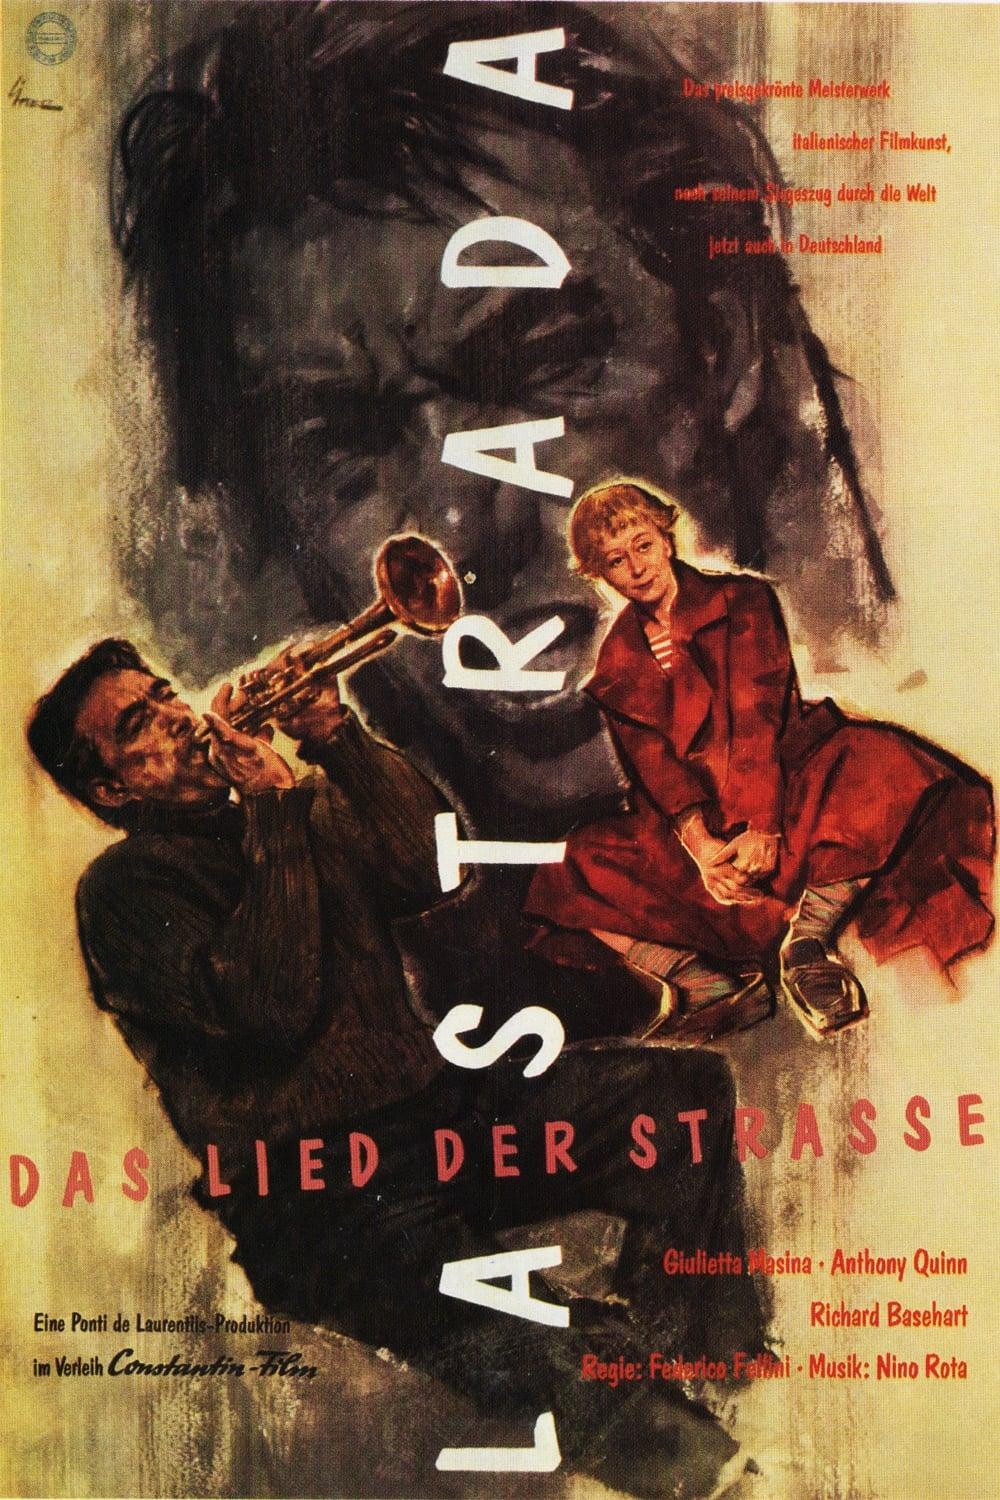 La Strada - Das Lied der Straße poster